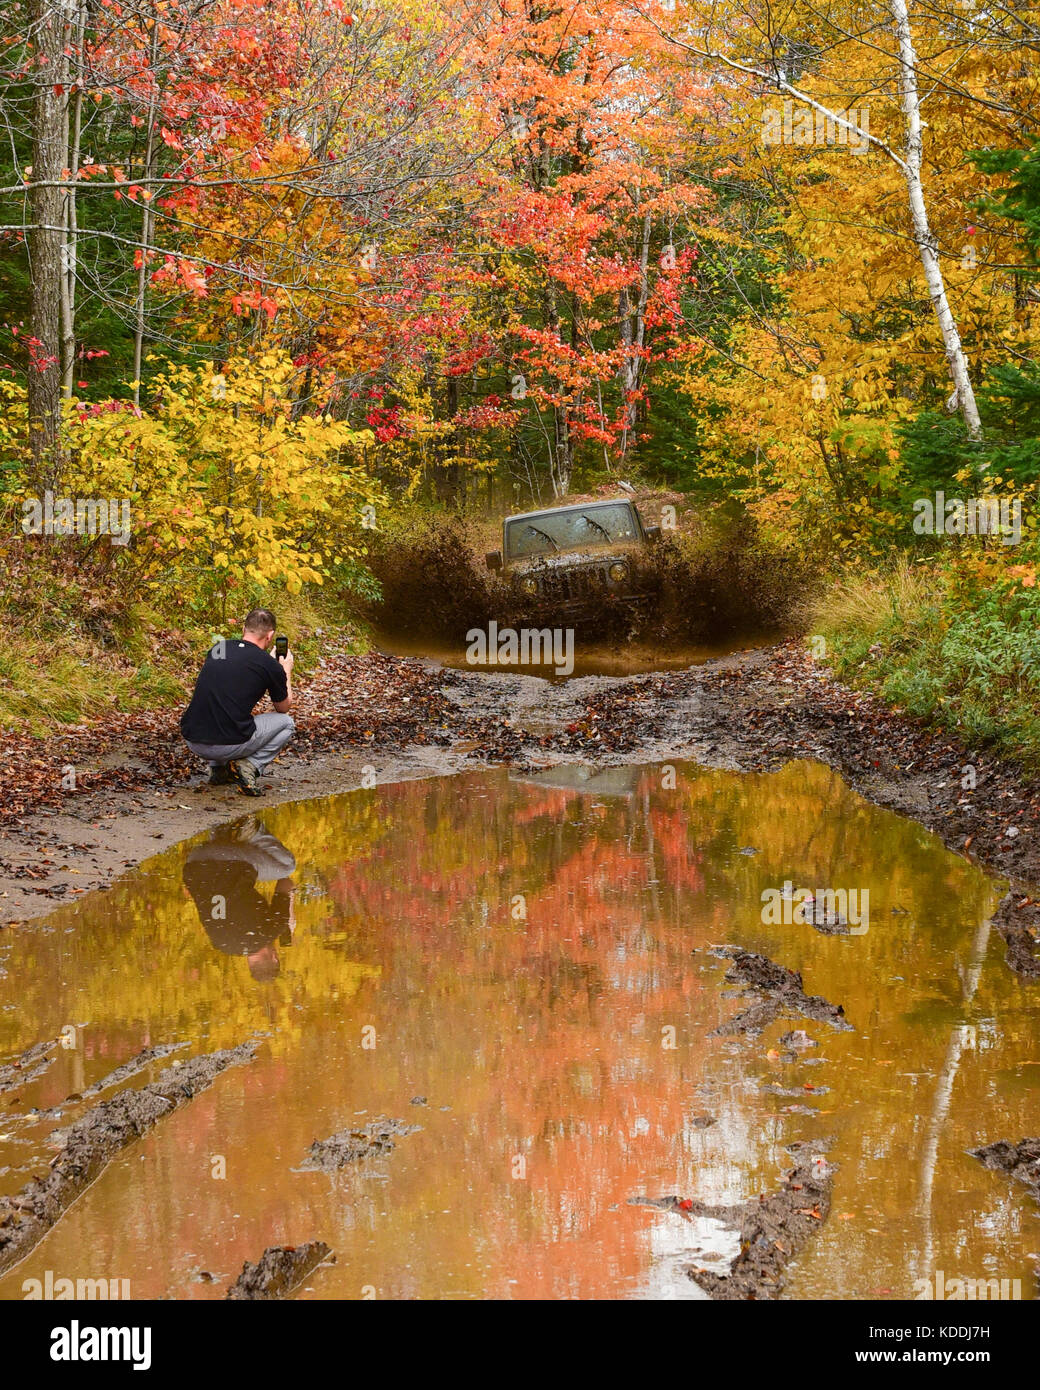 Ein Jeep Wrangler rubicon Laden durch Wasser und Schlamm Loch in der Adirondack Wildnis im Herbst, mit einem Fotografen, Handy Bilder. Stockfoto